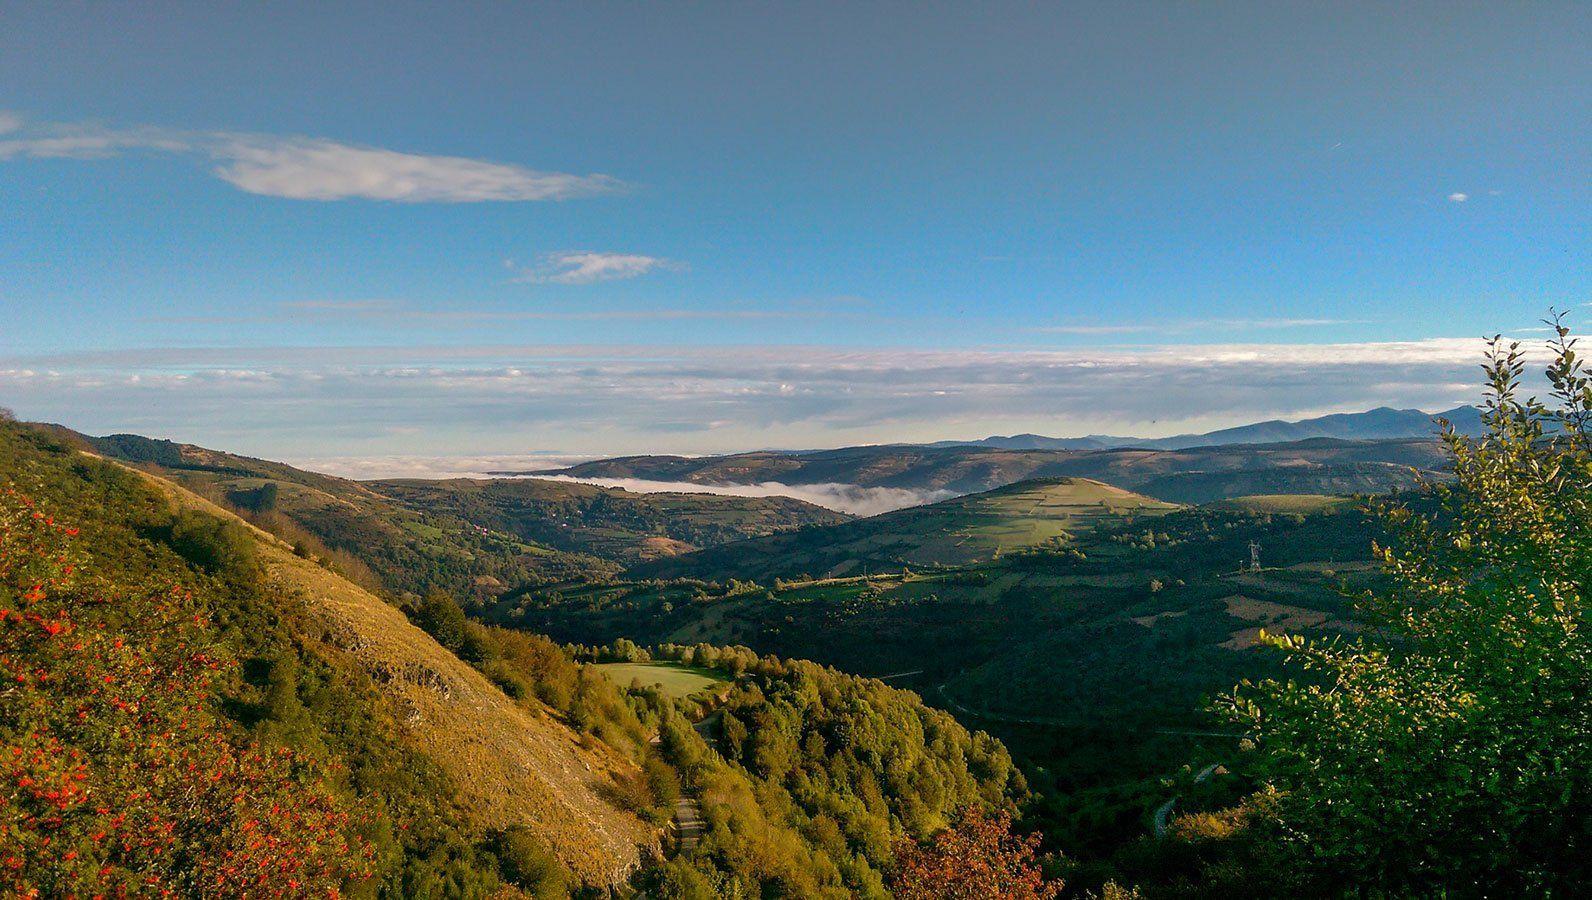 The view from O'Cebreiro